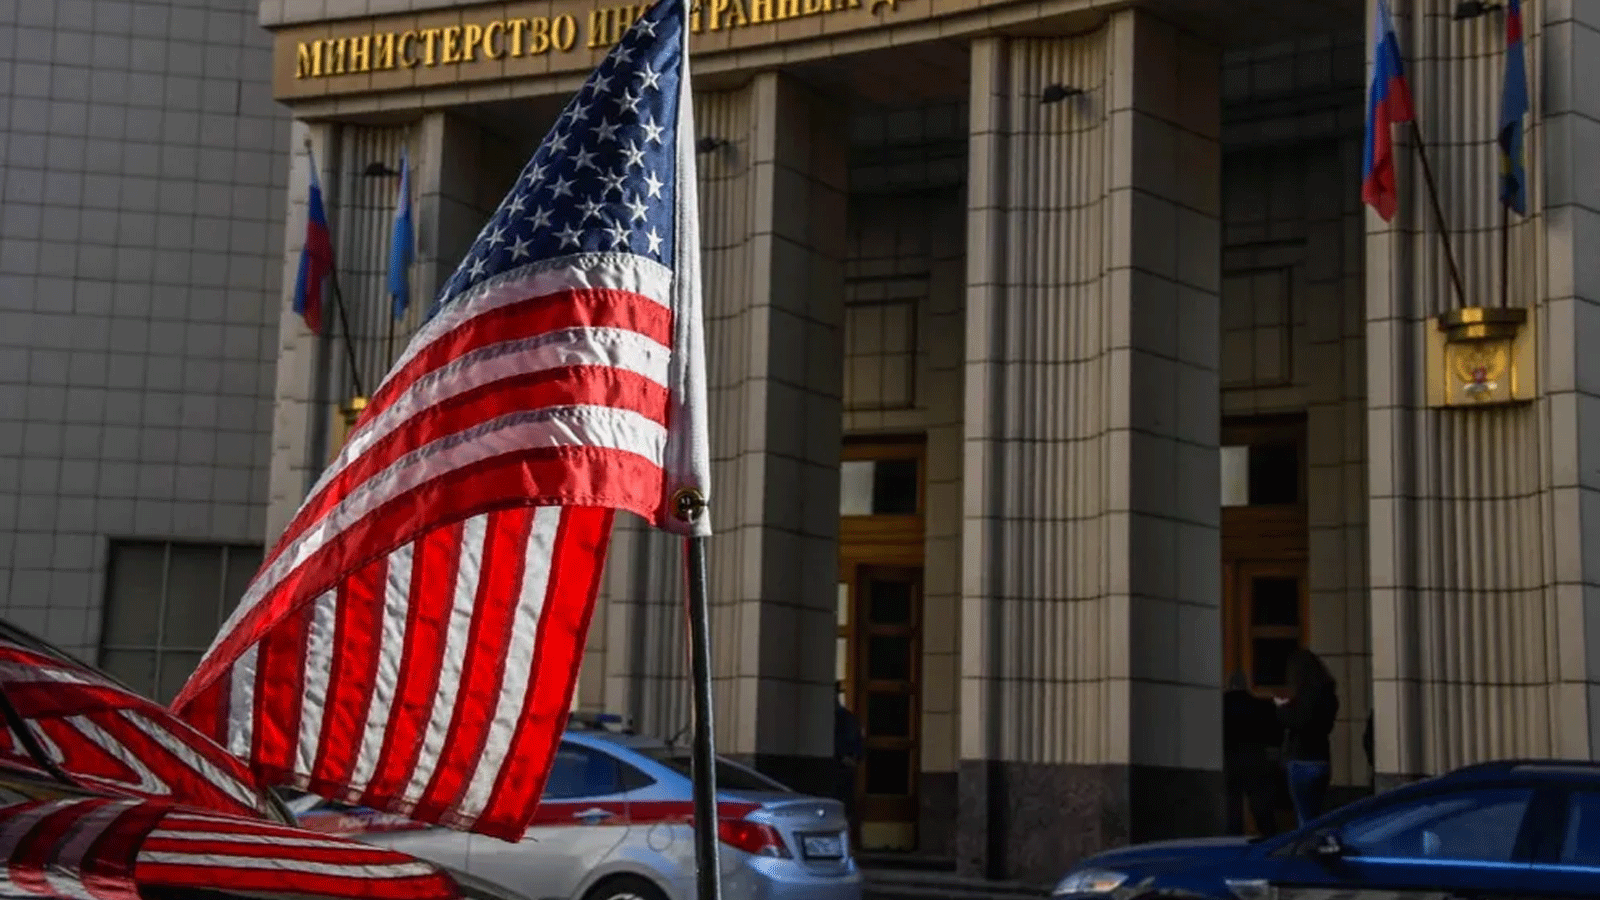 سيارة تابعة للسفارة الأمريكية كانت متمركزة أمام مقر وزارة الخارجية الروسية في موسكو/ روسيا في 12 تشرين الأول/أكتوبر 2021.